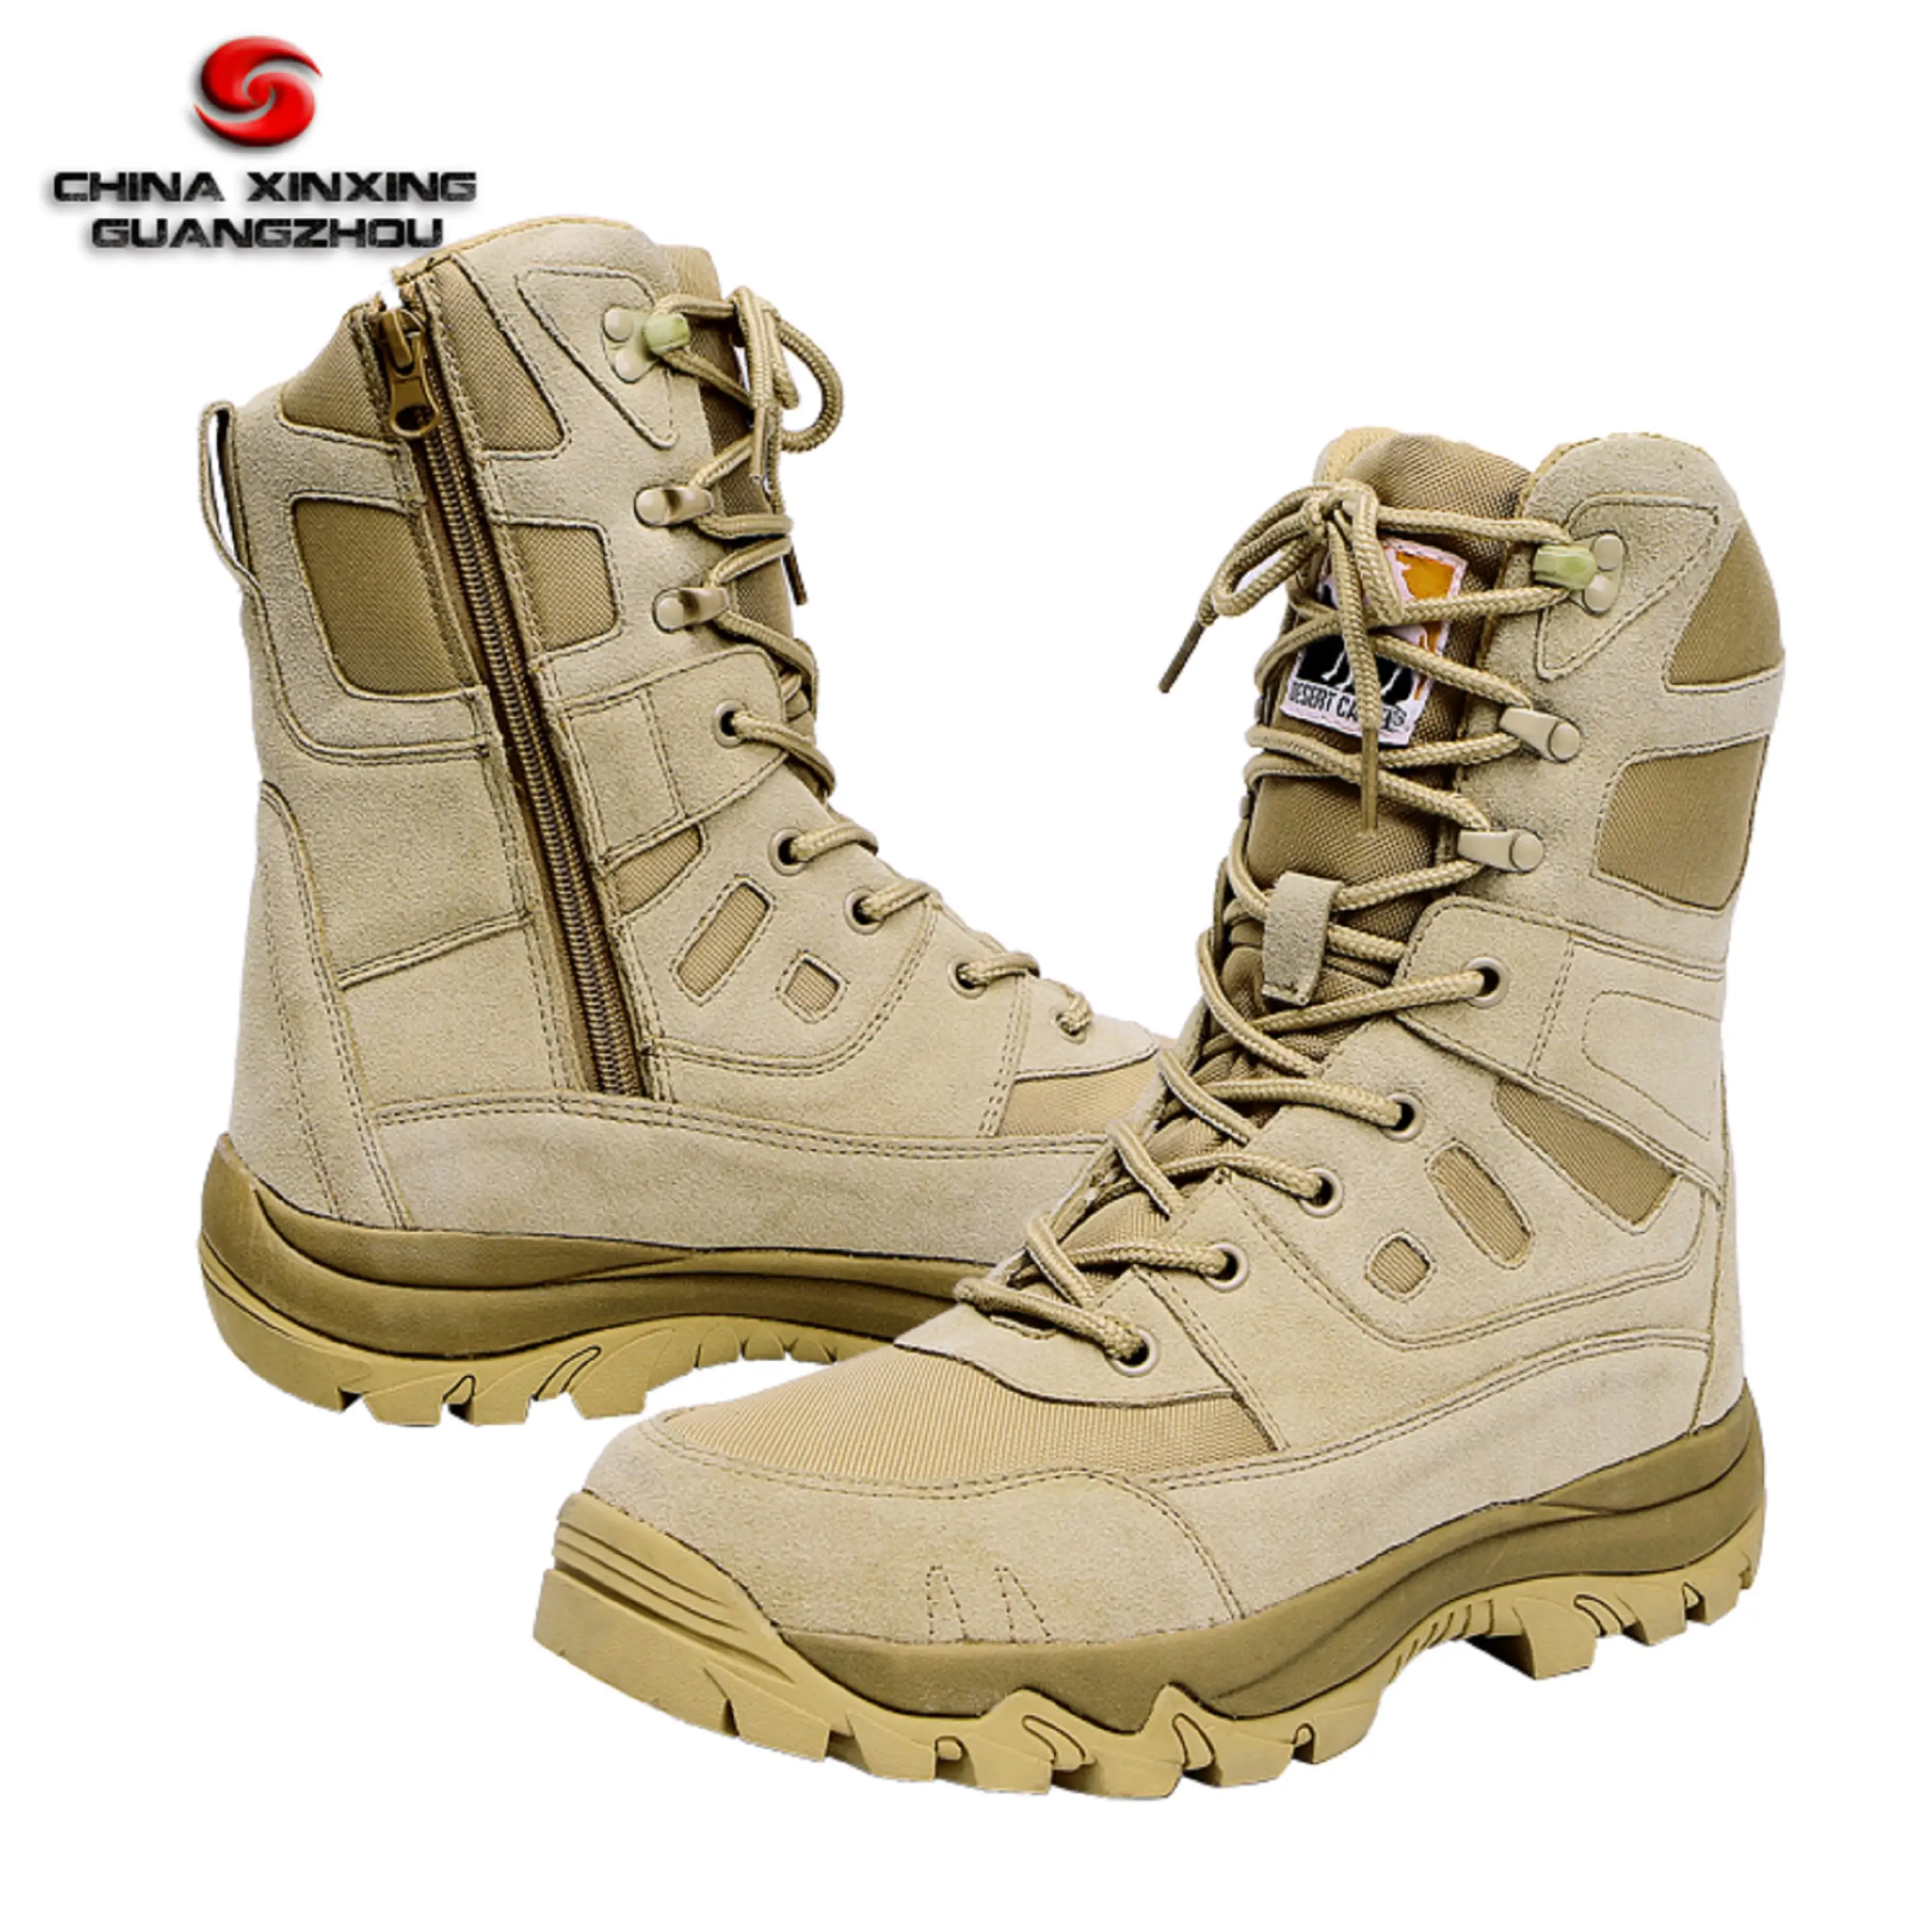 कस्टम सेना डेजर्ट एमडी outsole के लड़ाकू जूते बिक्री के लिए सामरिक पुरुषों की सैन्य जूते